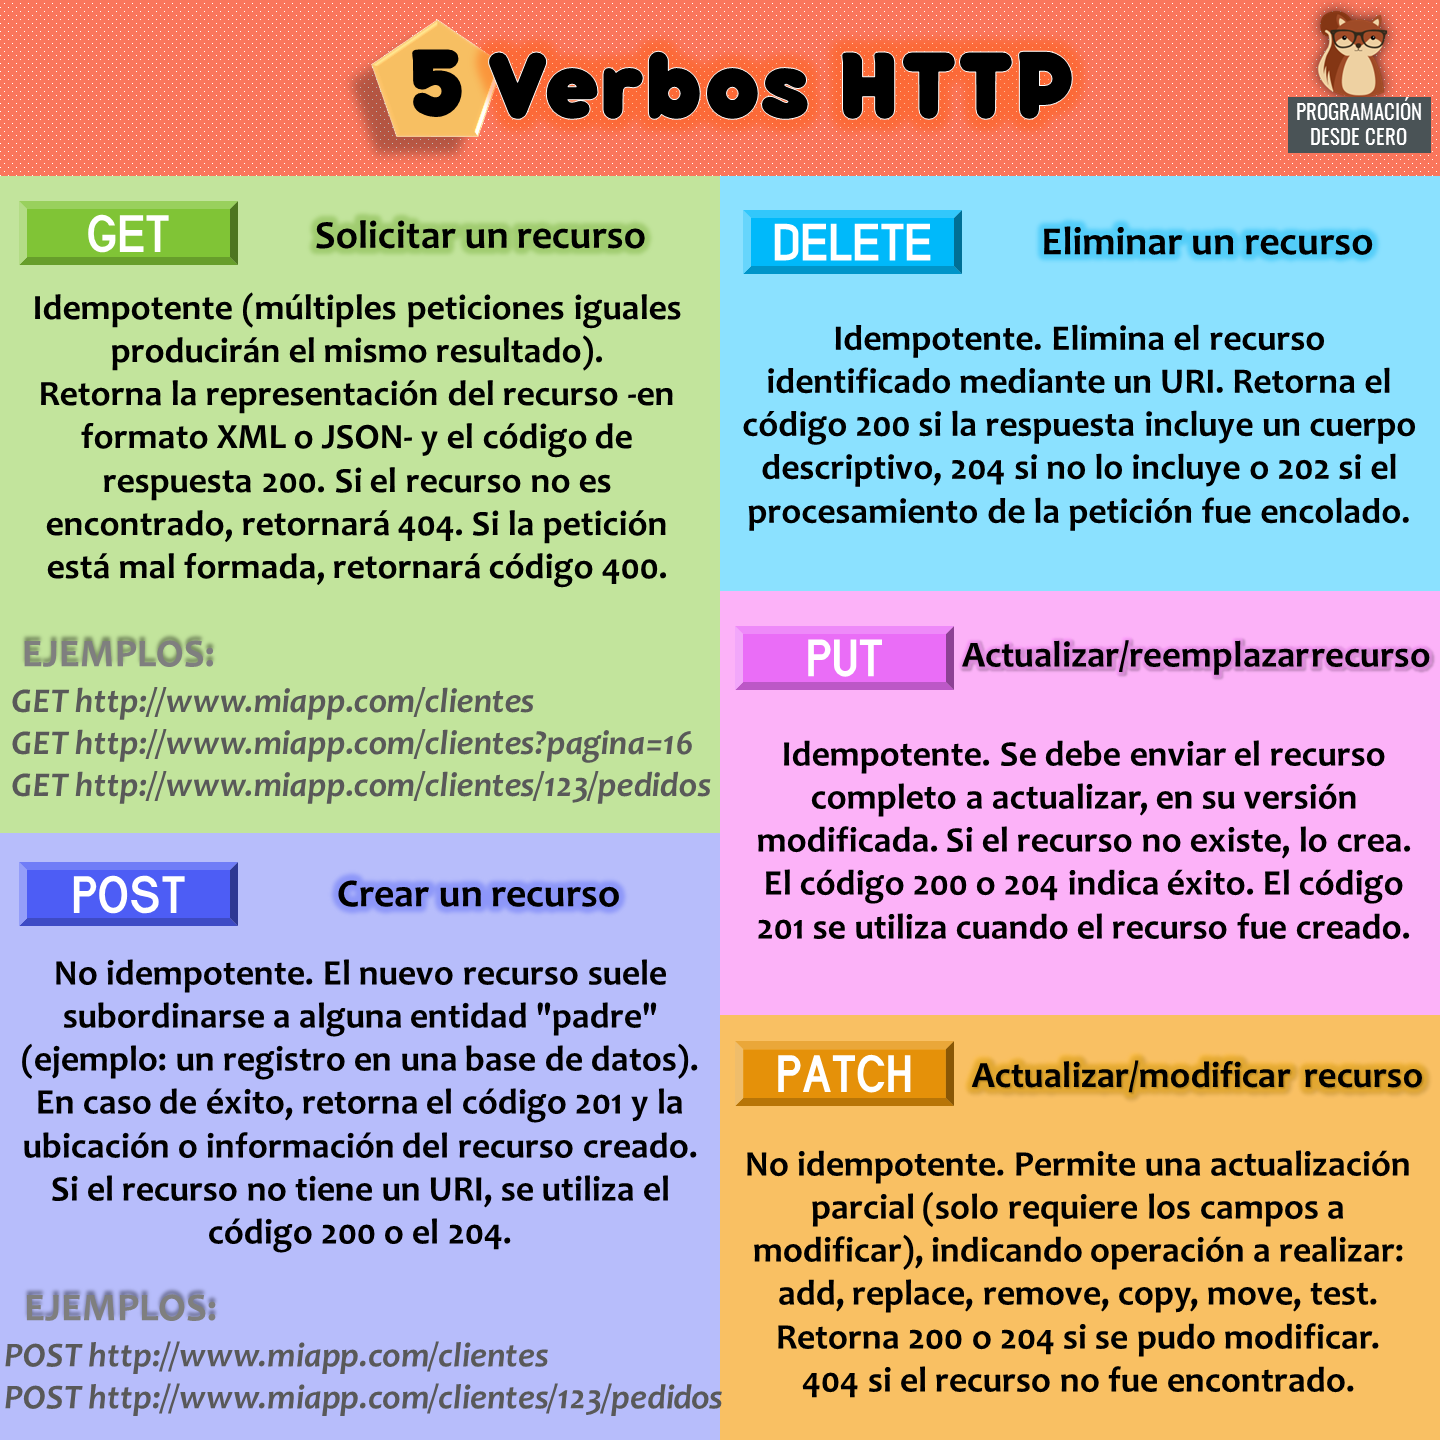 Verbos HTTP